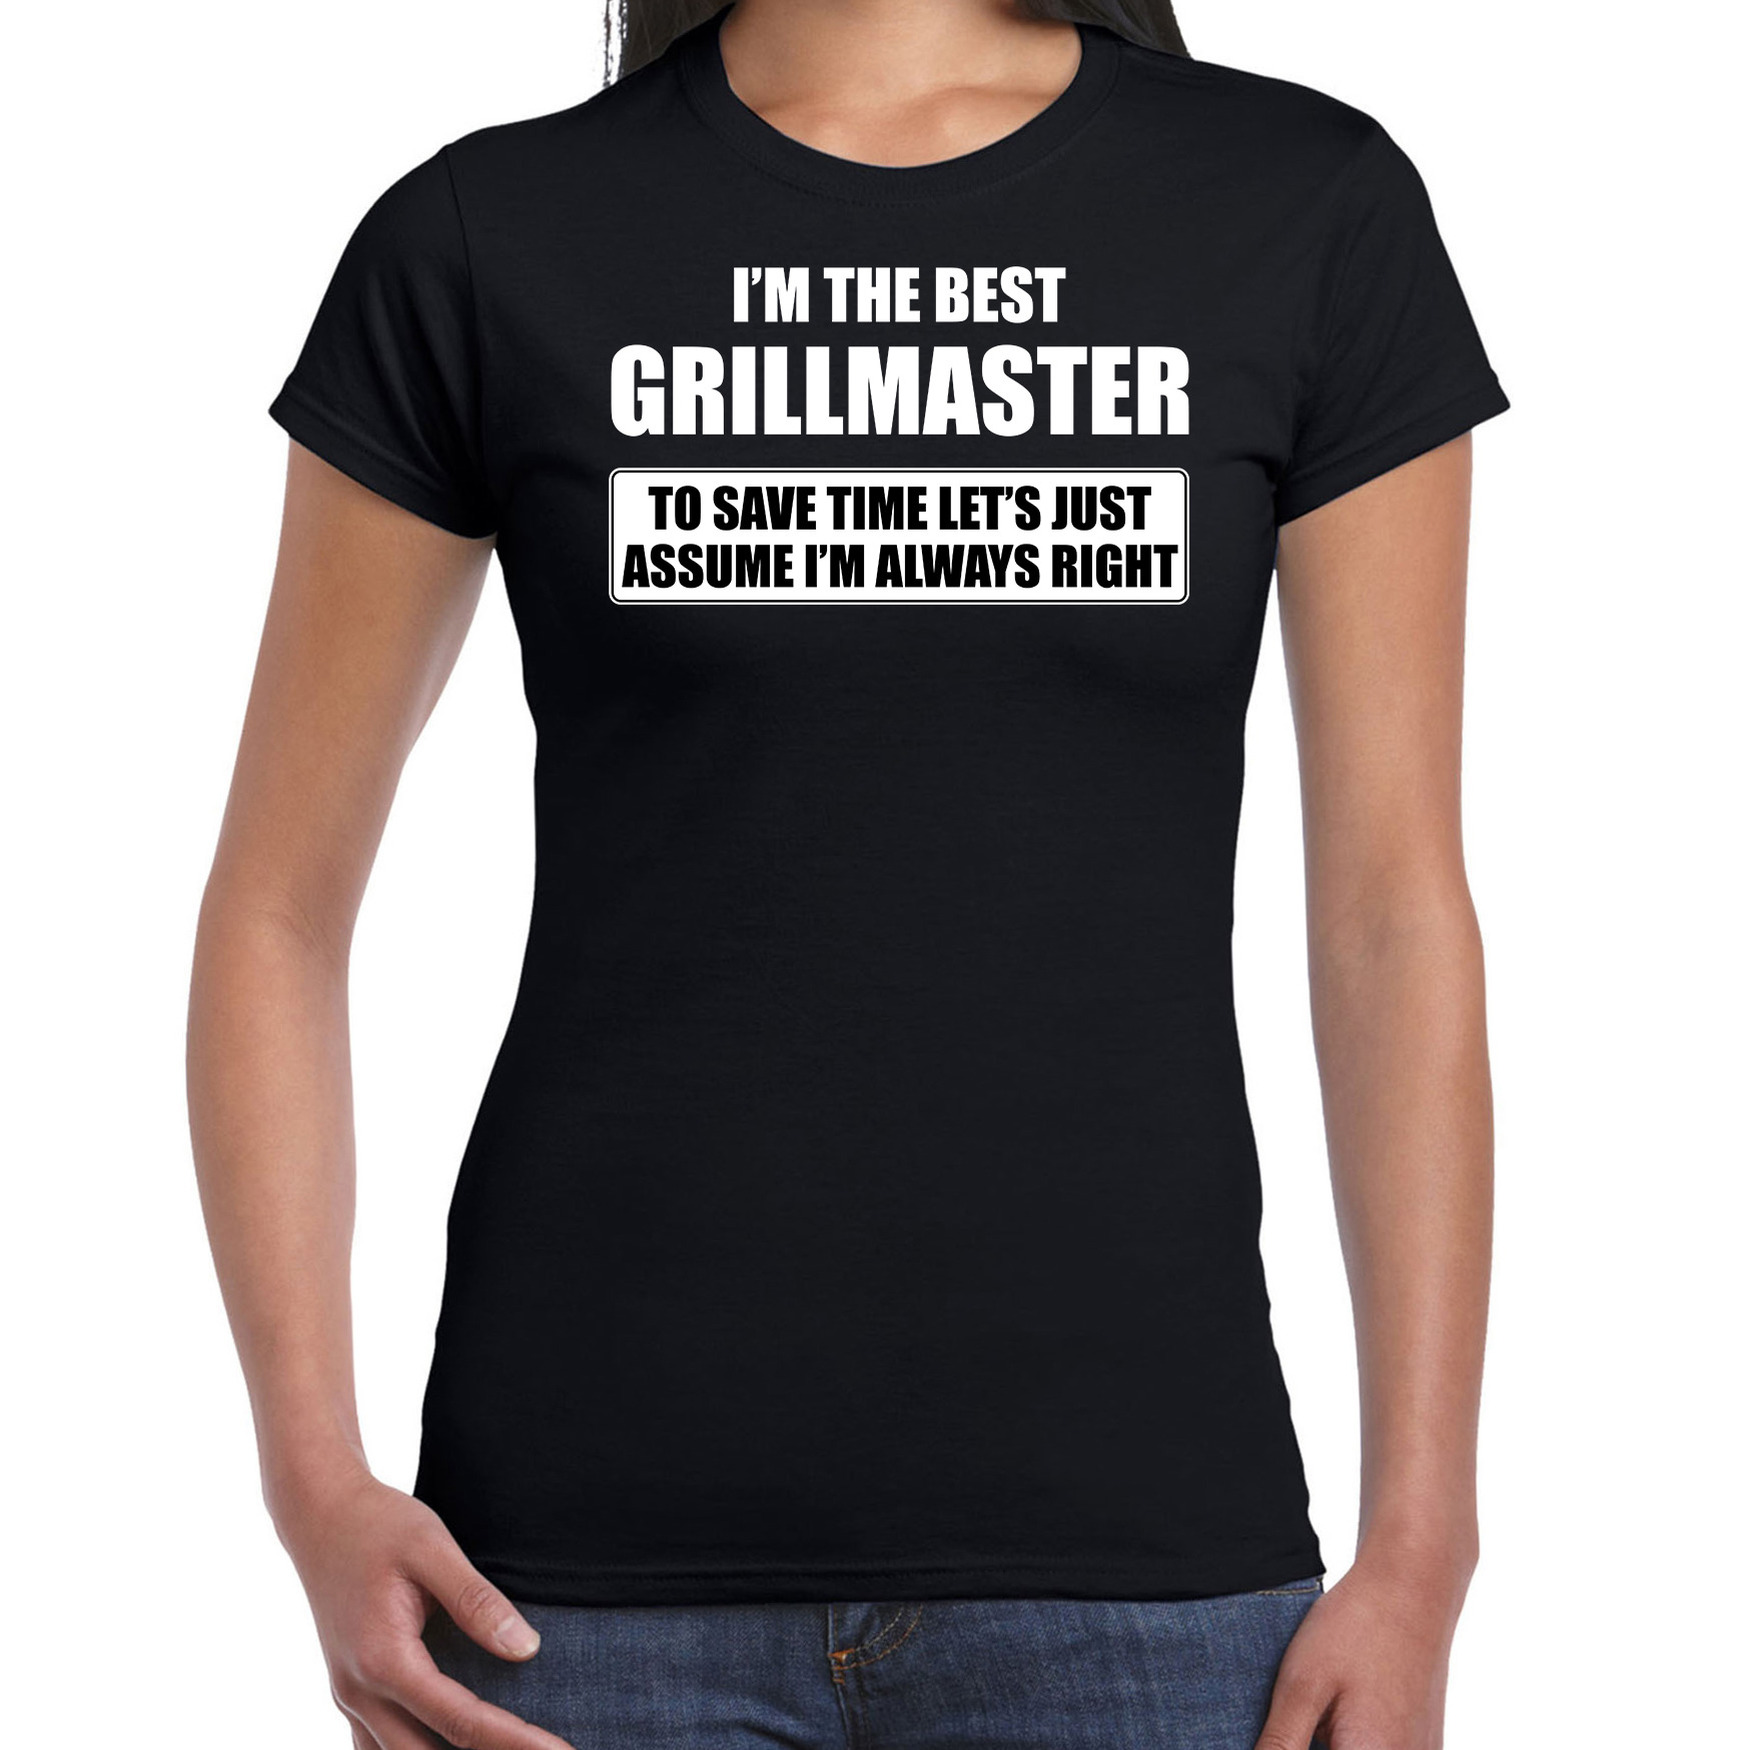 I'm the best grillmaster t-shirt zwart dames De beste barbecue kok cadeau